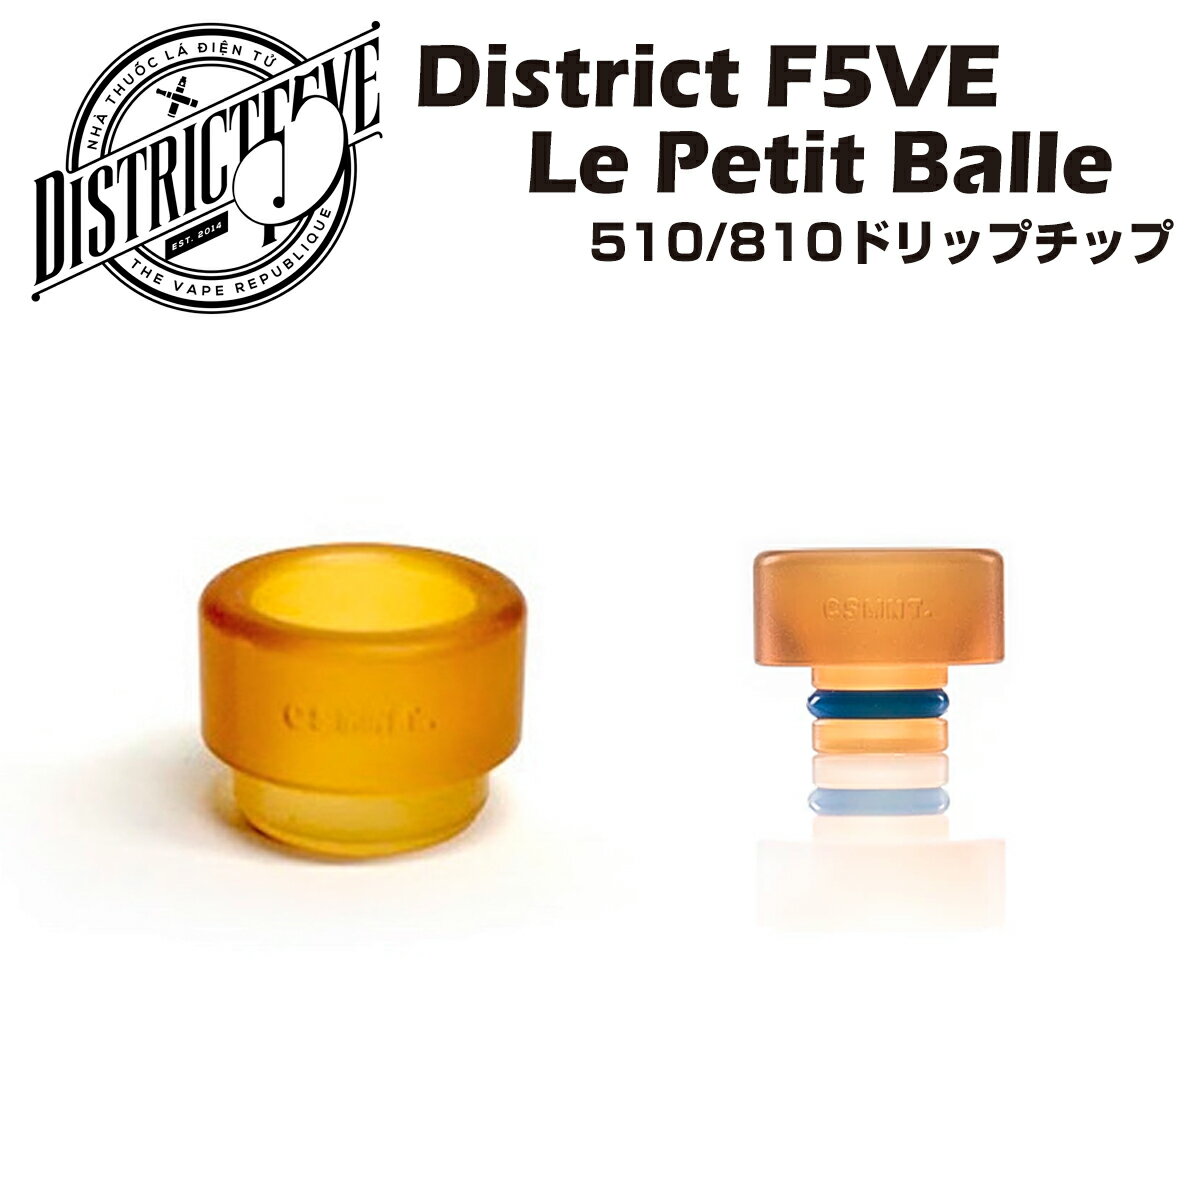 【送料無料】 District F5VE / Le Petit Balle Drip Tip ドリップチップ 510/810 ウルテム製 電子タバコ 電子たばこ …